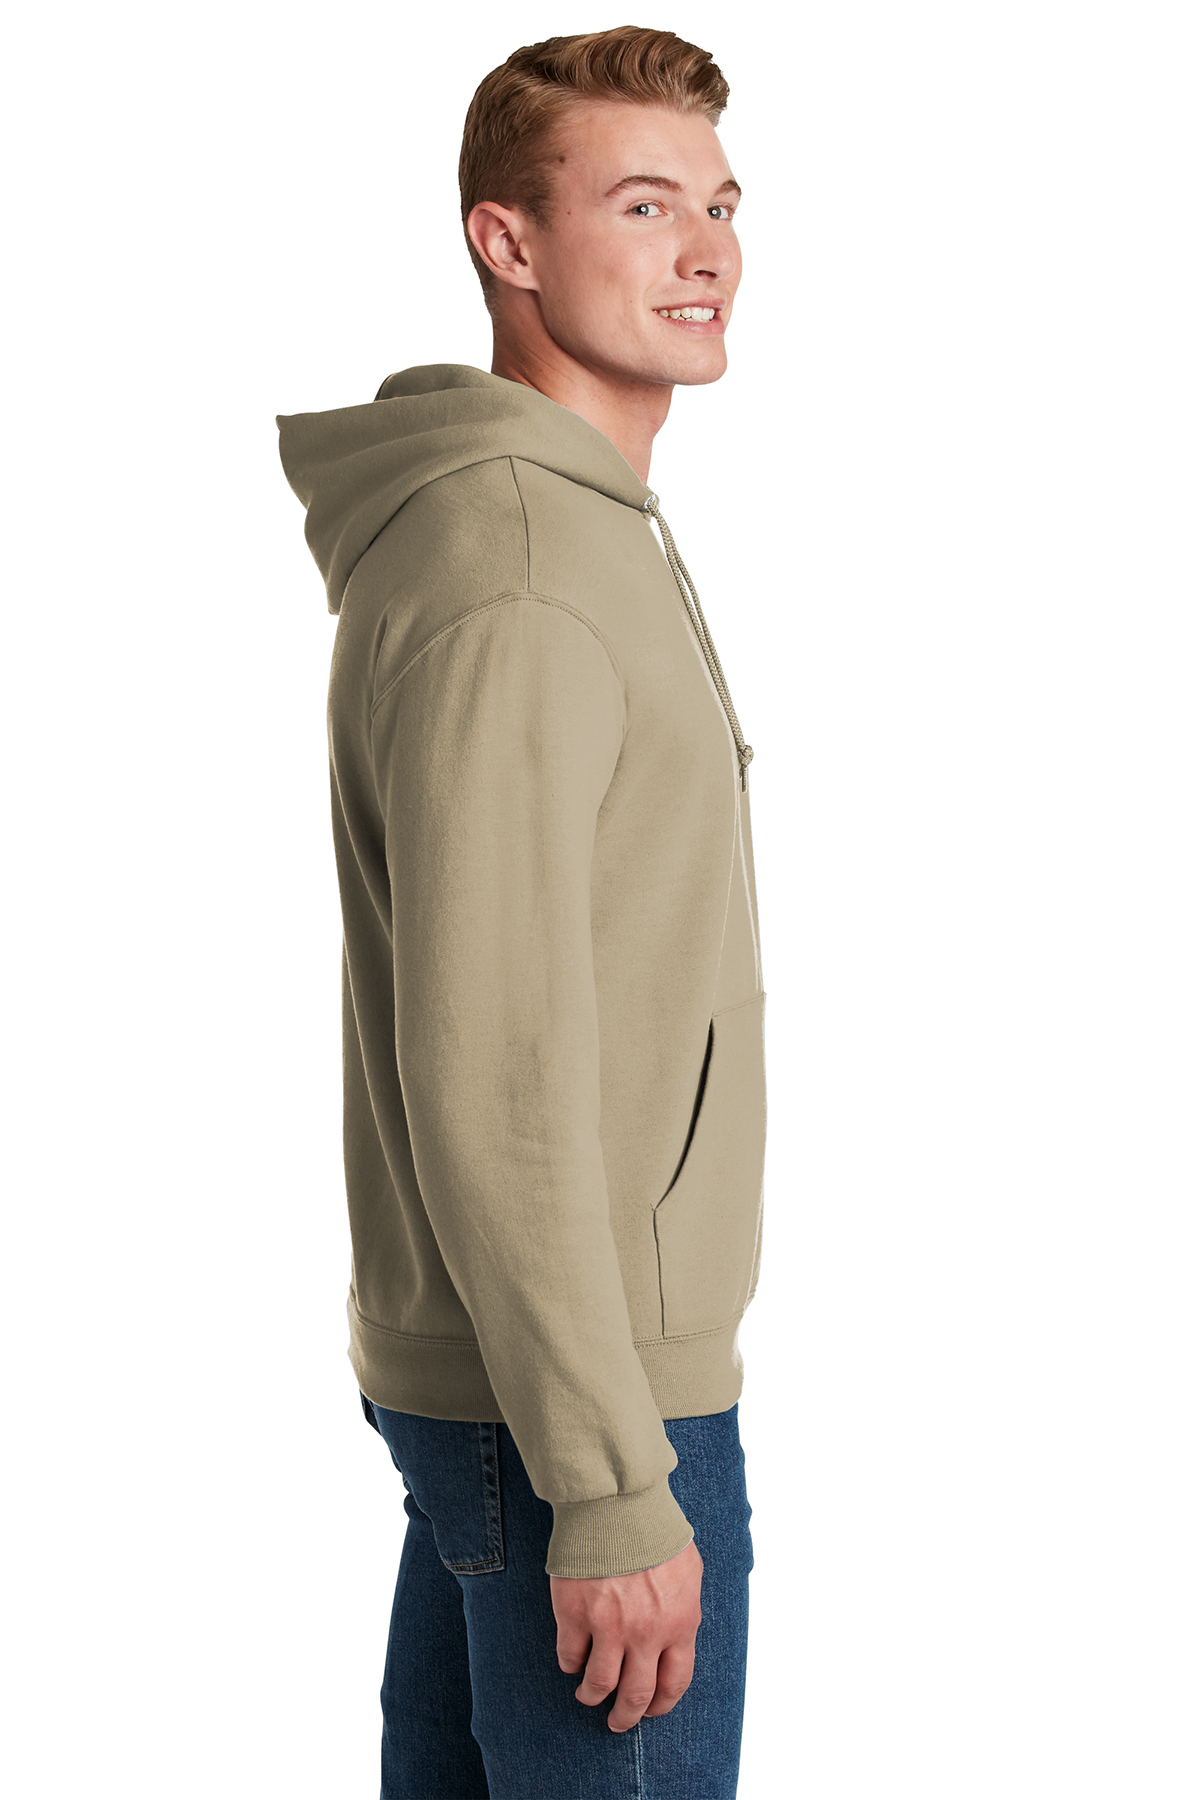 NuBlend Product Jerzees SanMar - | Pullover Sweatshirt | Hooded